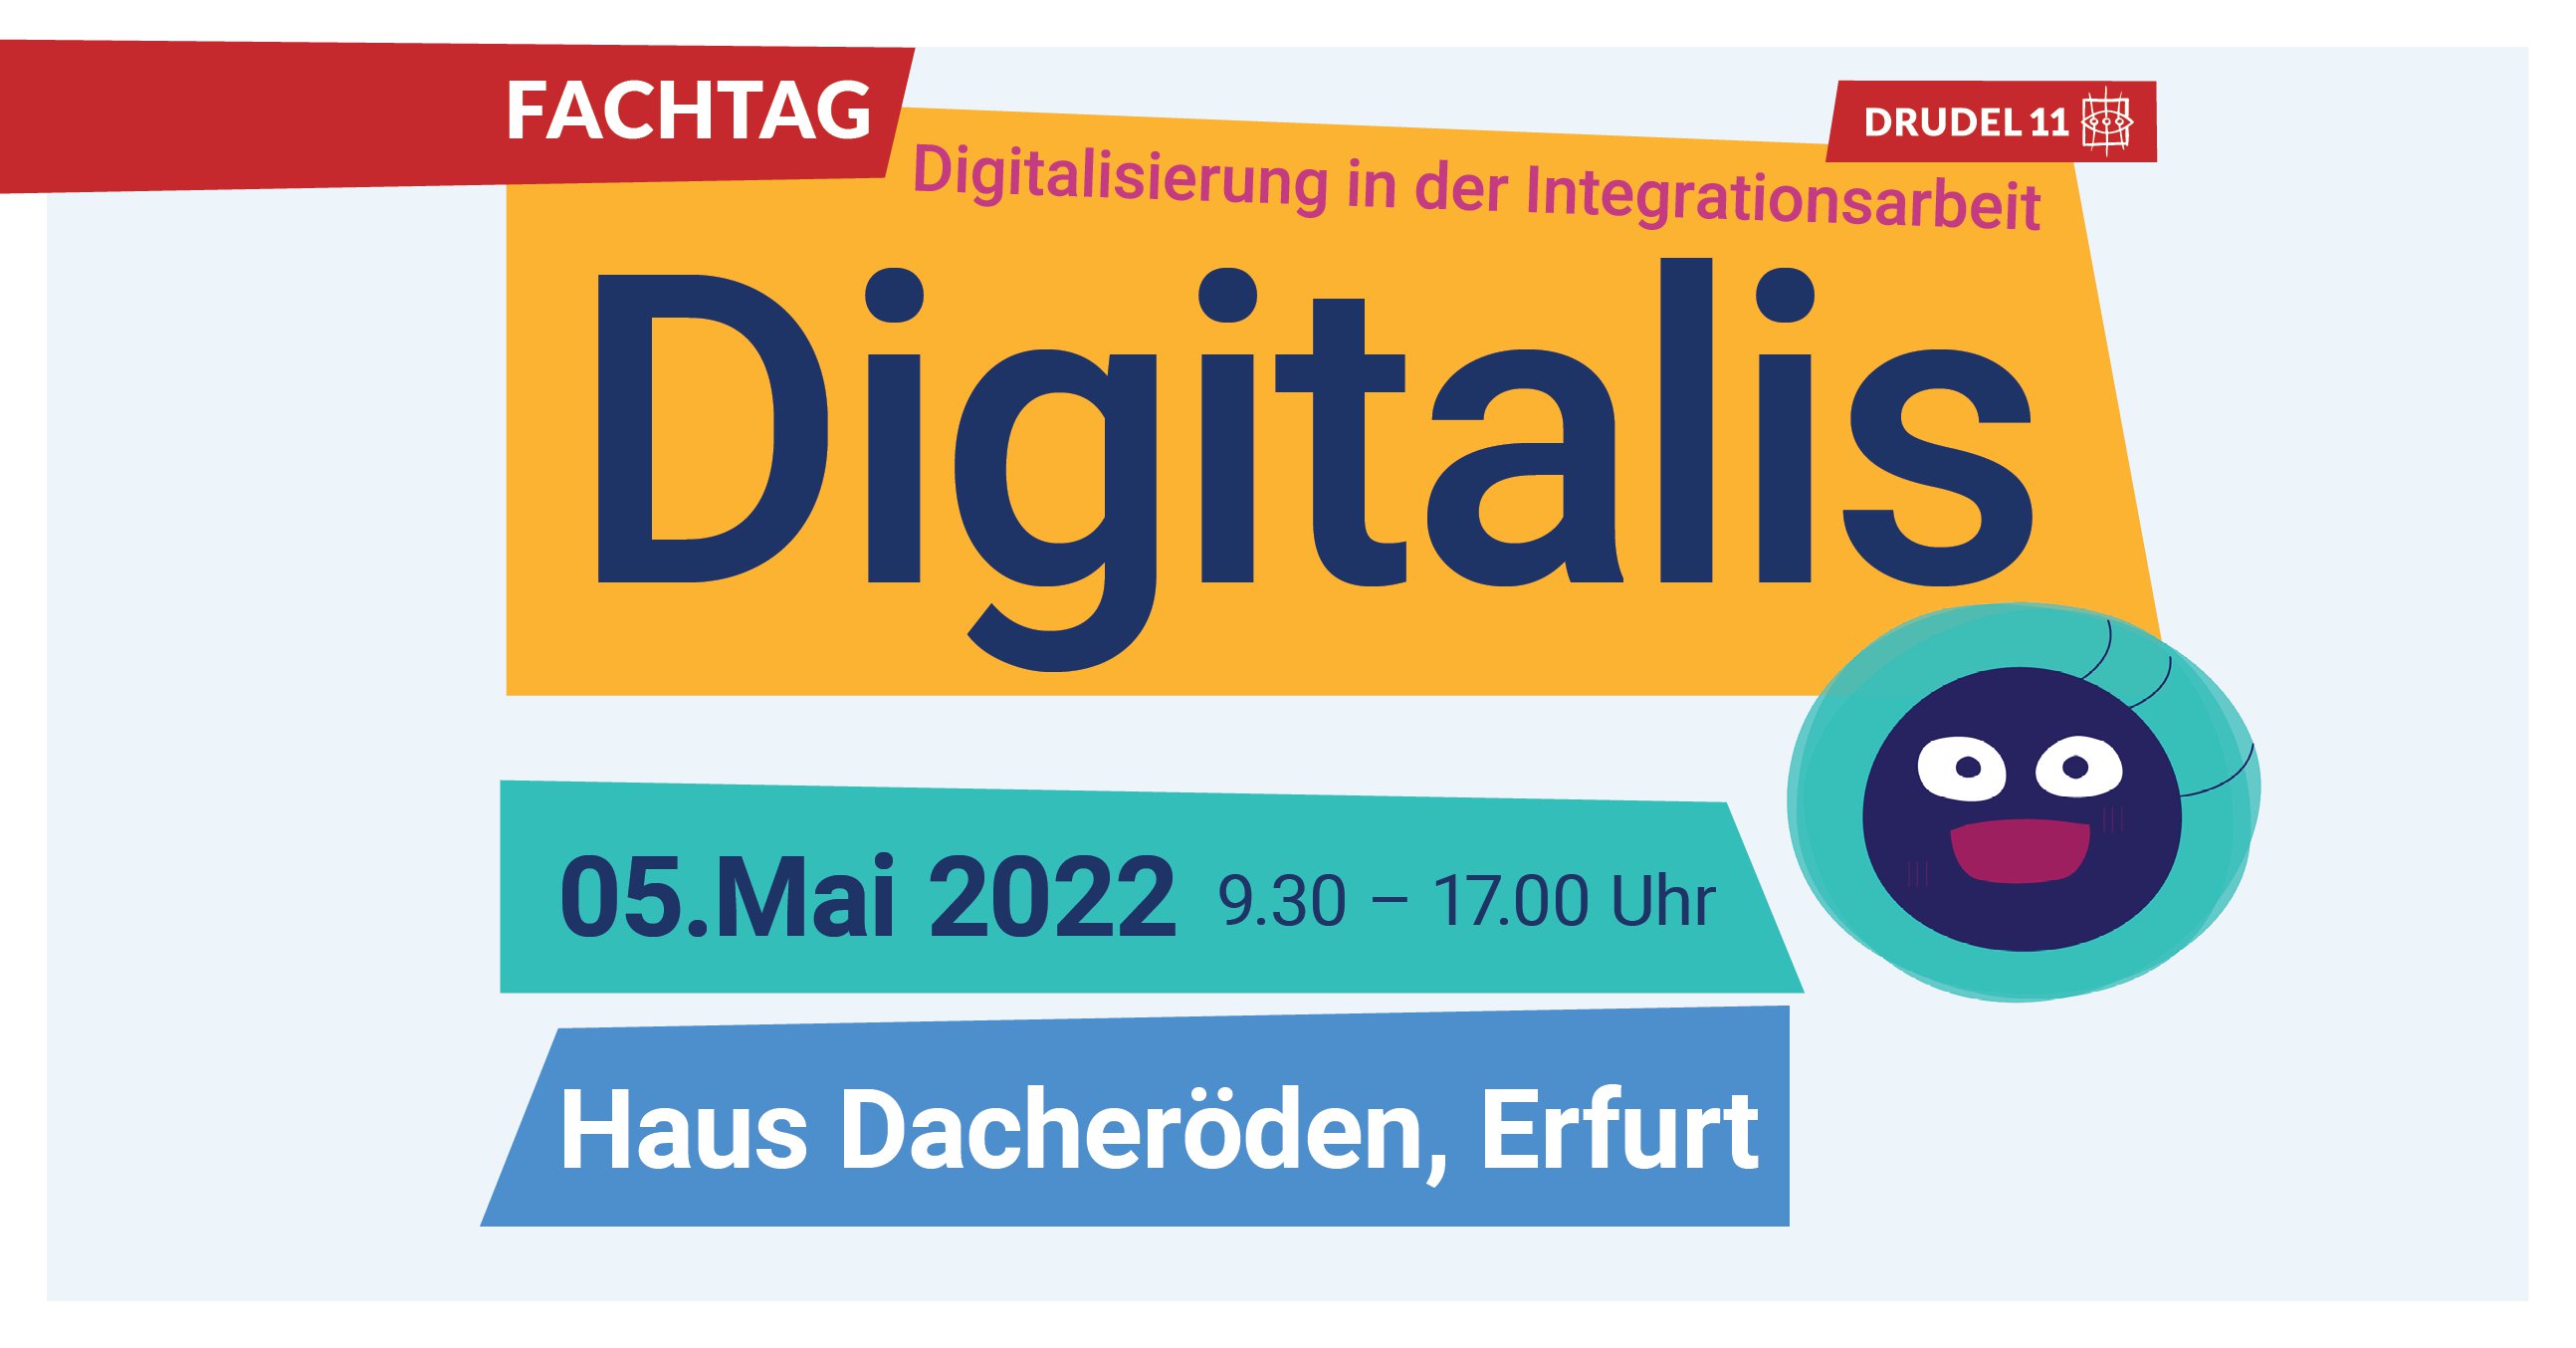 Fachtag Digitalis - Digitalisierung in der Integrationsarbeit